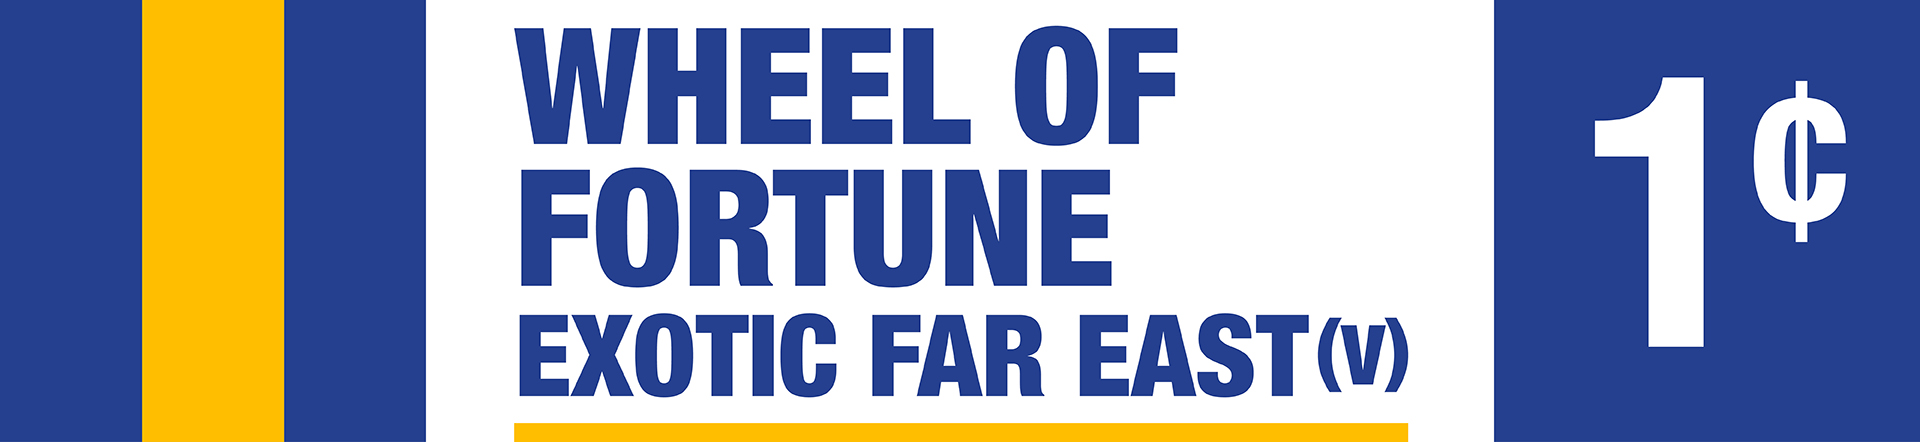 Wheel of Fortune: Exotic Far East (V)